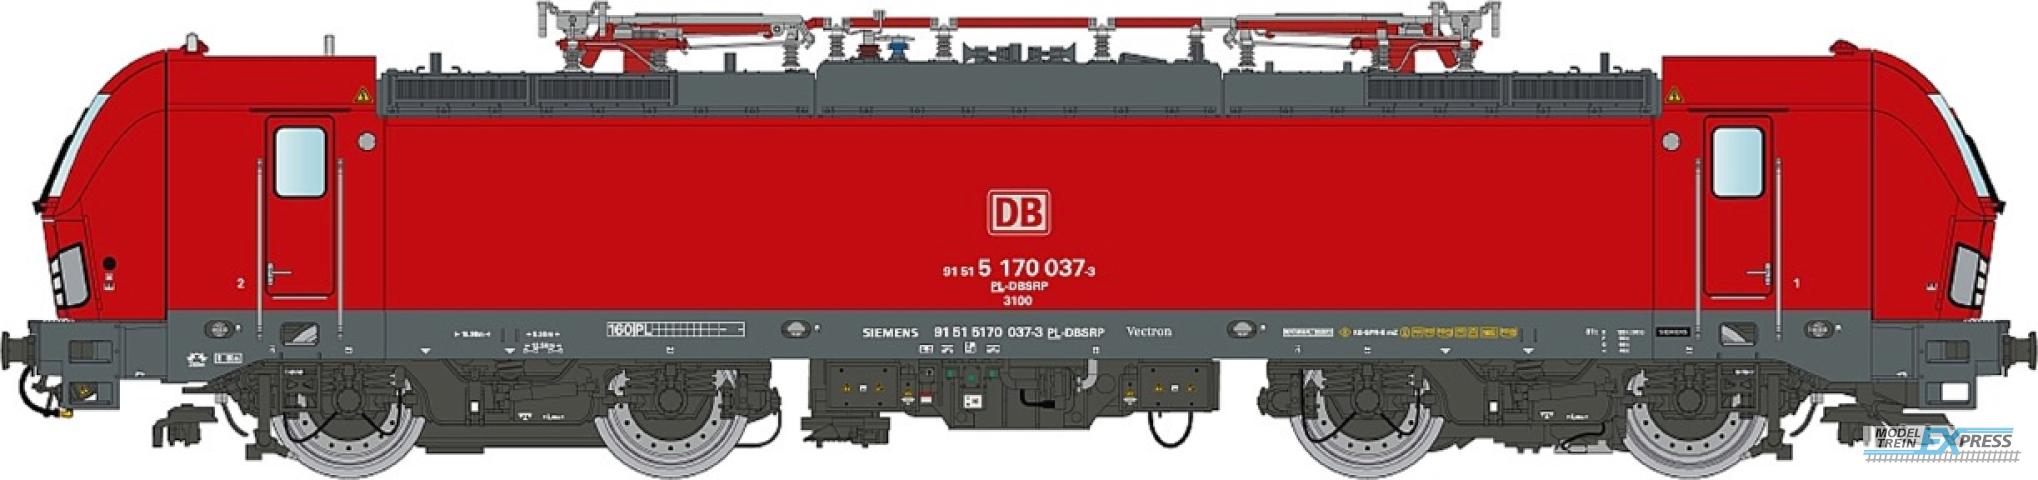 LS Models 18003 DB Schenker Rail Polska, rood, DB logo, n° 91 51 5170 037-3 PL-DBSRP, DC